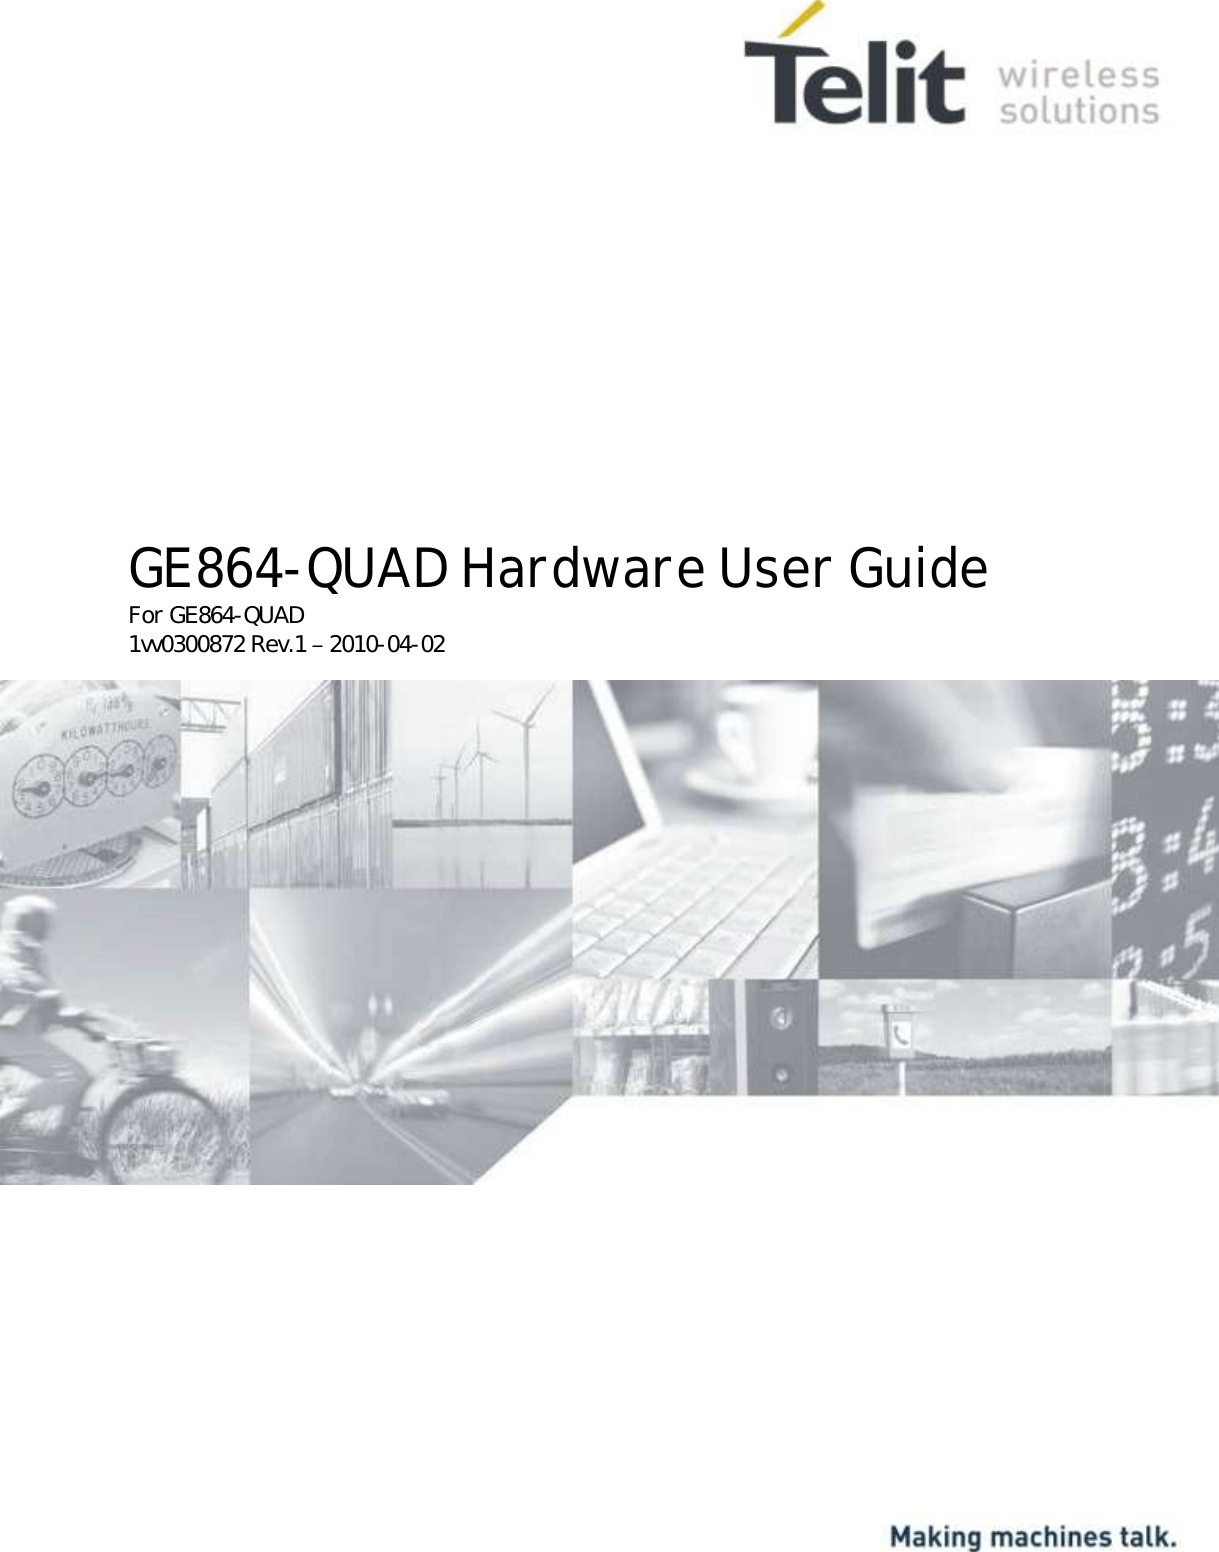                  GE864-QUAD Hardware User Guide For GE864-QUAD 1vv0300872 Rev.1   2010-04-02   